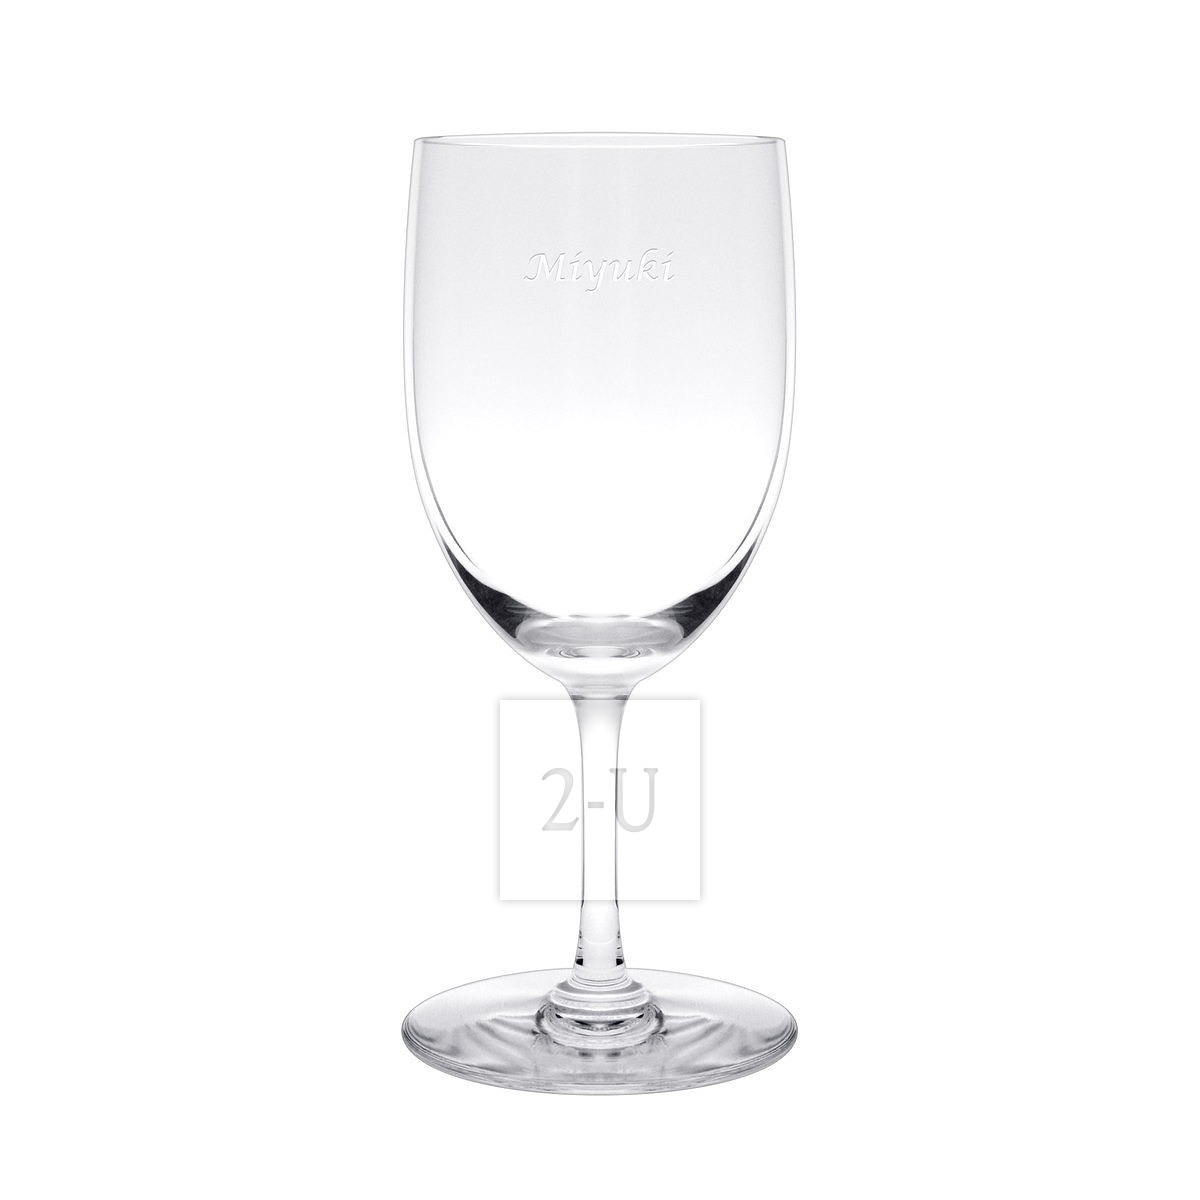 法國巴卡拉 Baccarat Perfection 係列水晶玻璃葡萄酒杯 L